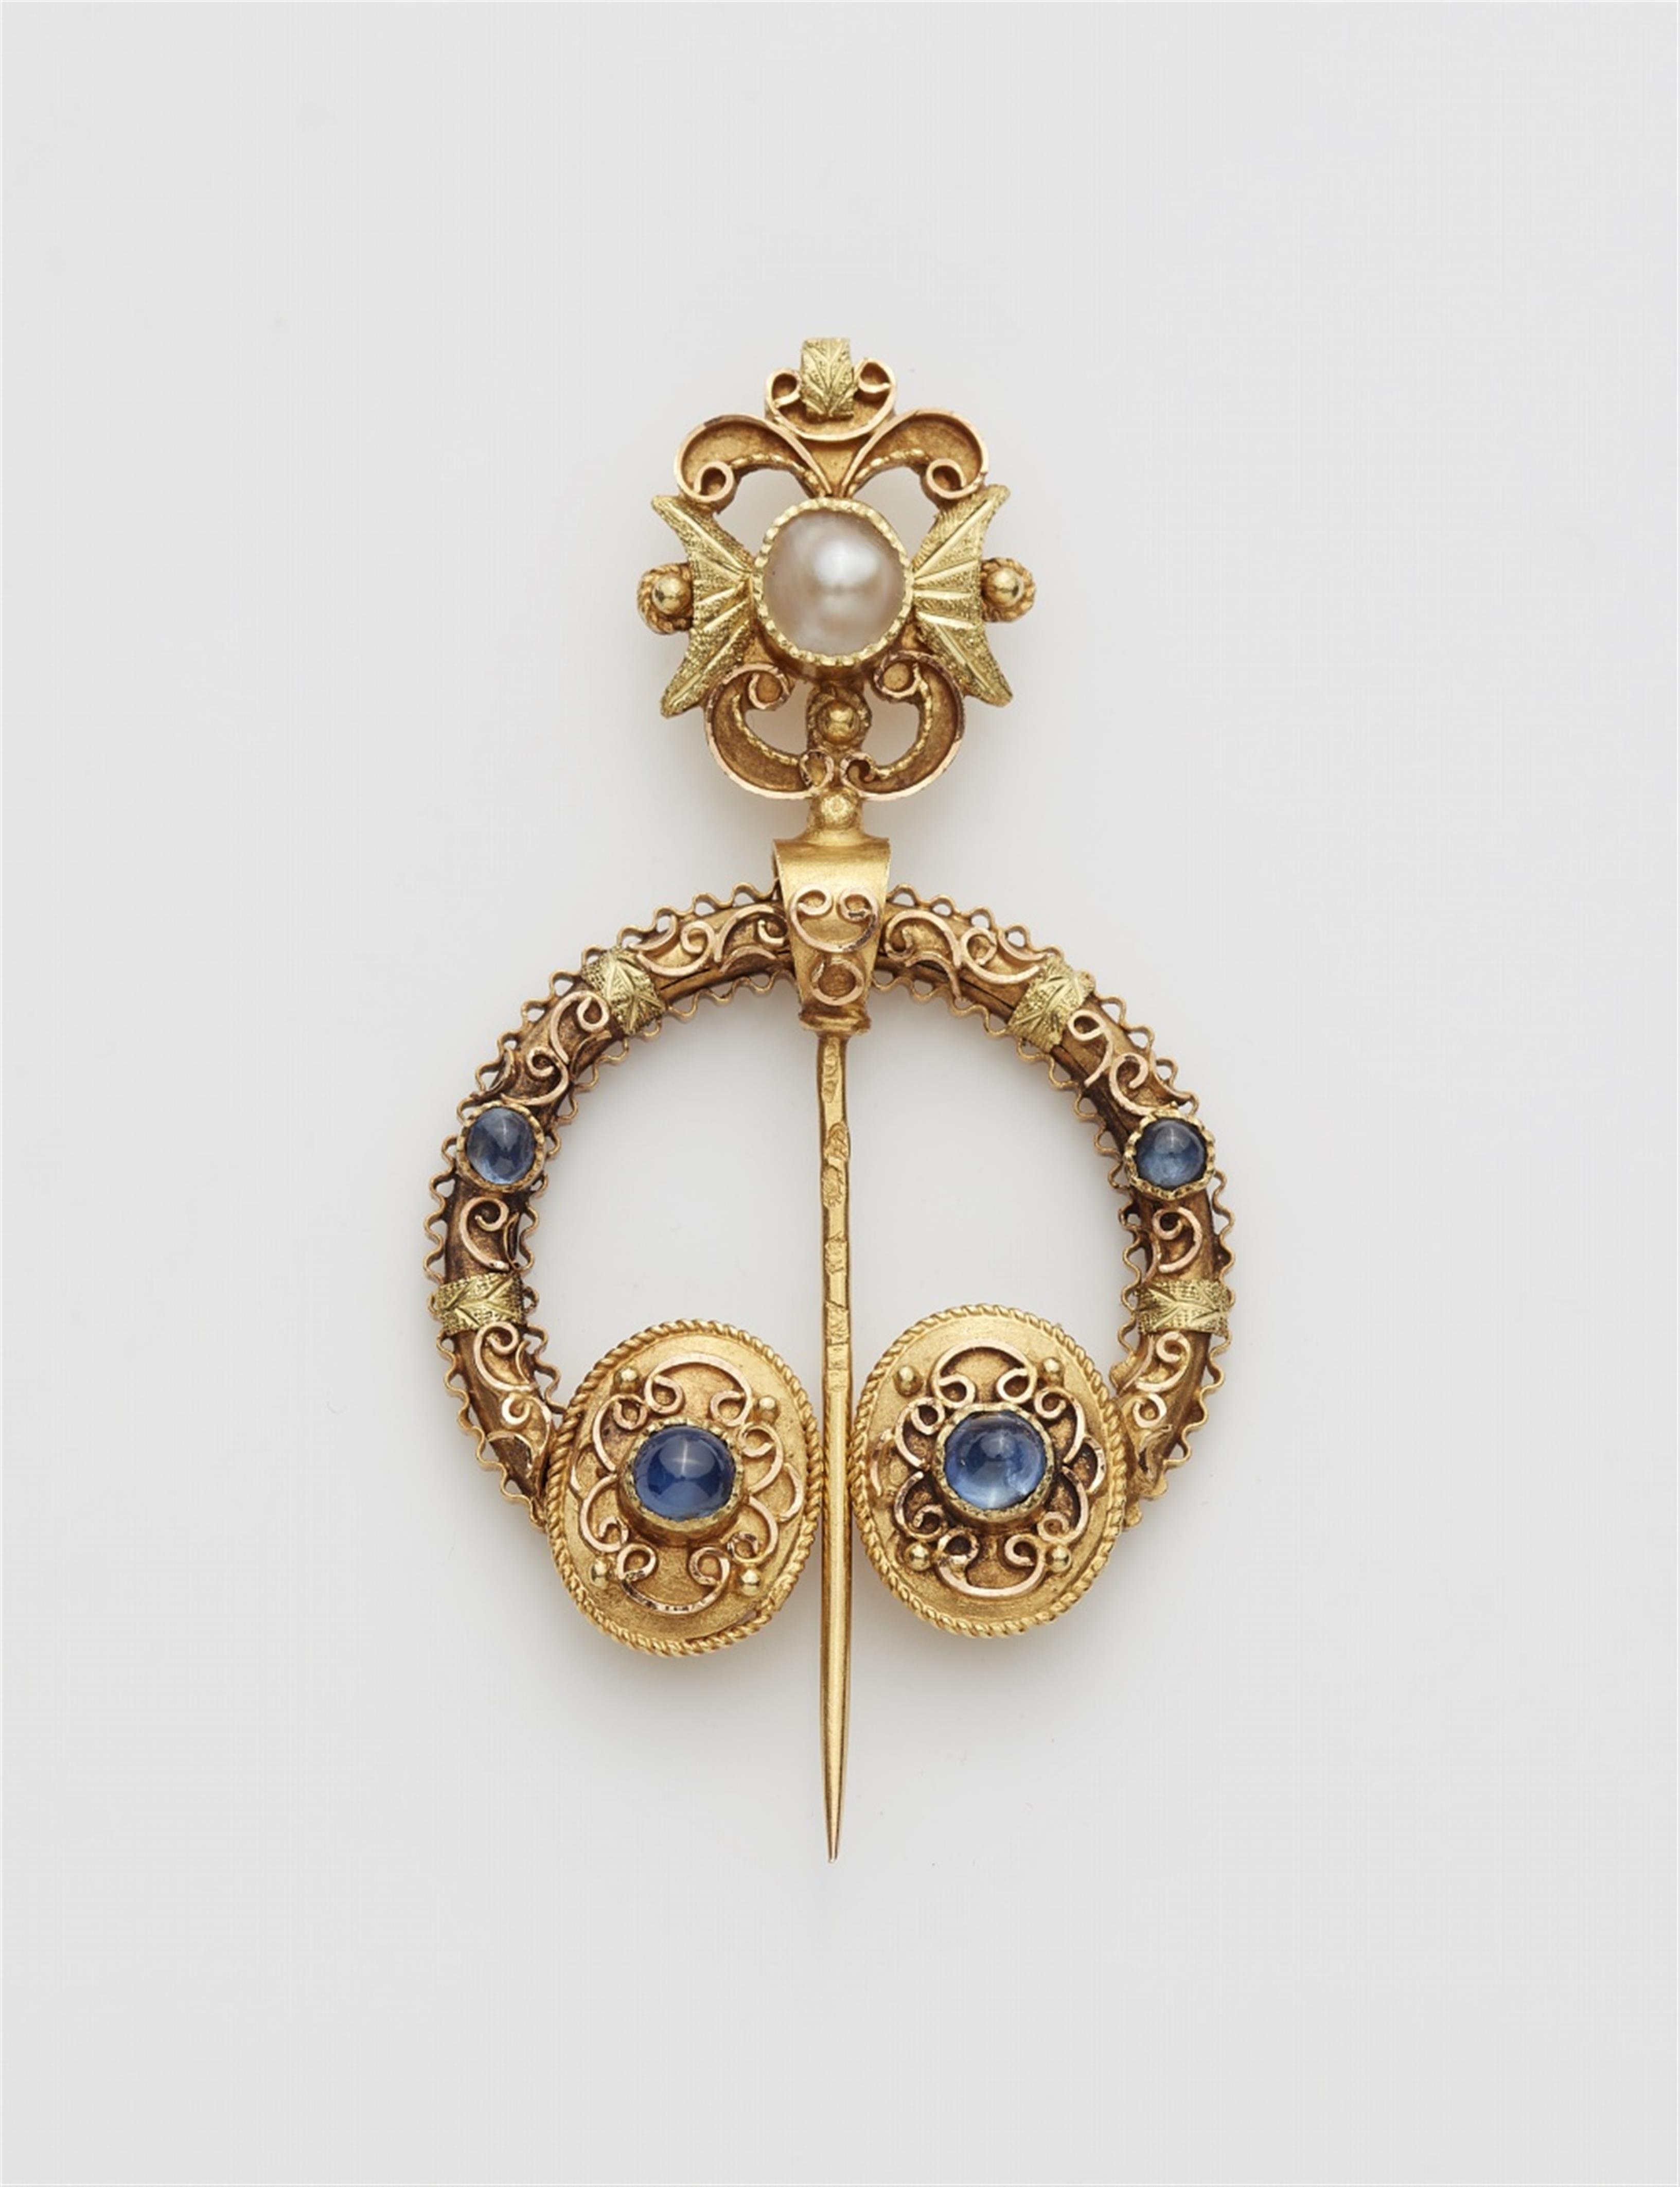 A 14k gold Celtic style fibula brooch - image-1